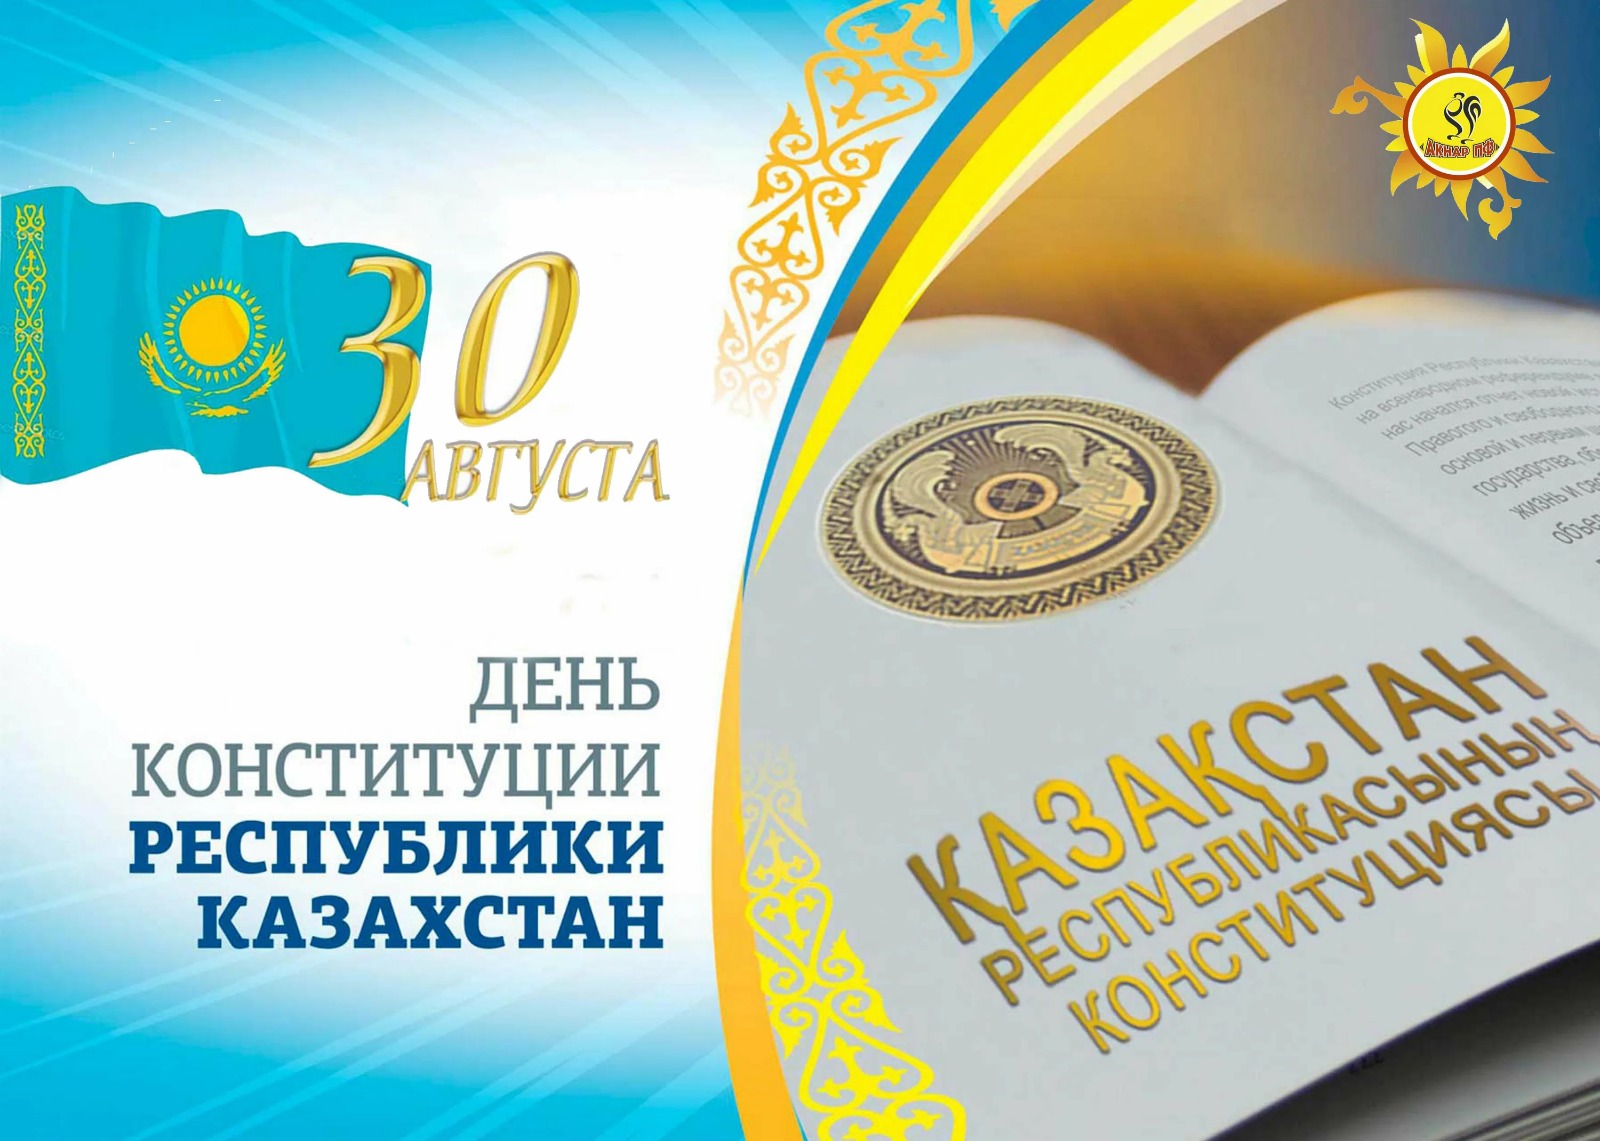 С Днем Конституции Республики Казахстан!  Уважаемые соотечественники!  Примите самые искренние поздравления с государственным праздником - Днем Конституции Республики Казахстан!